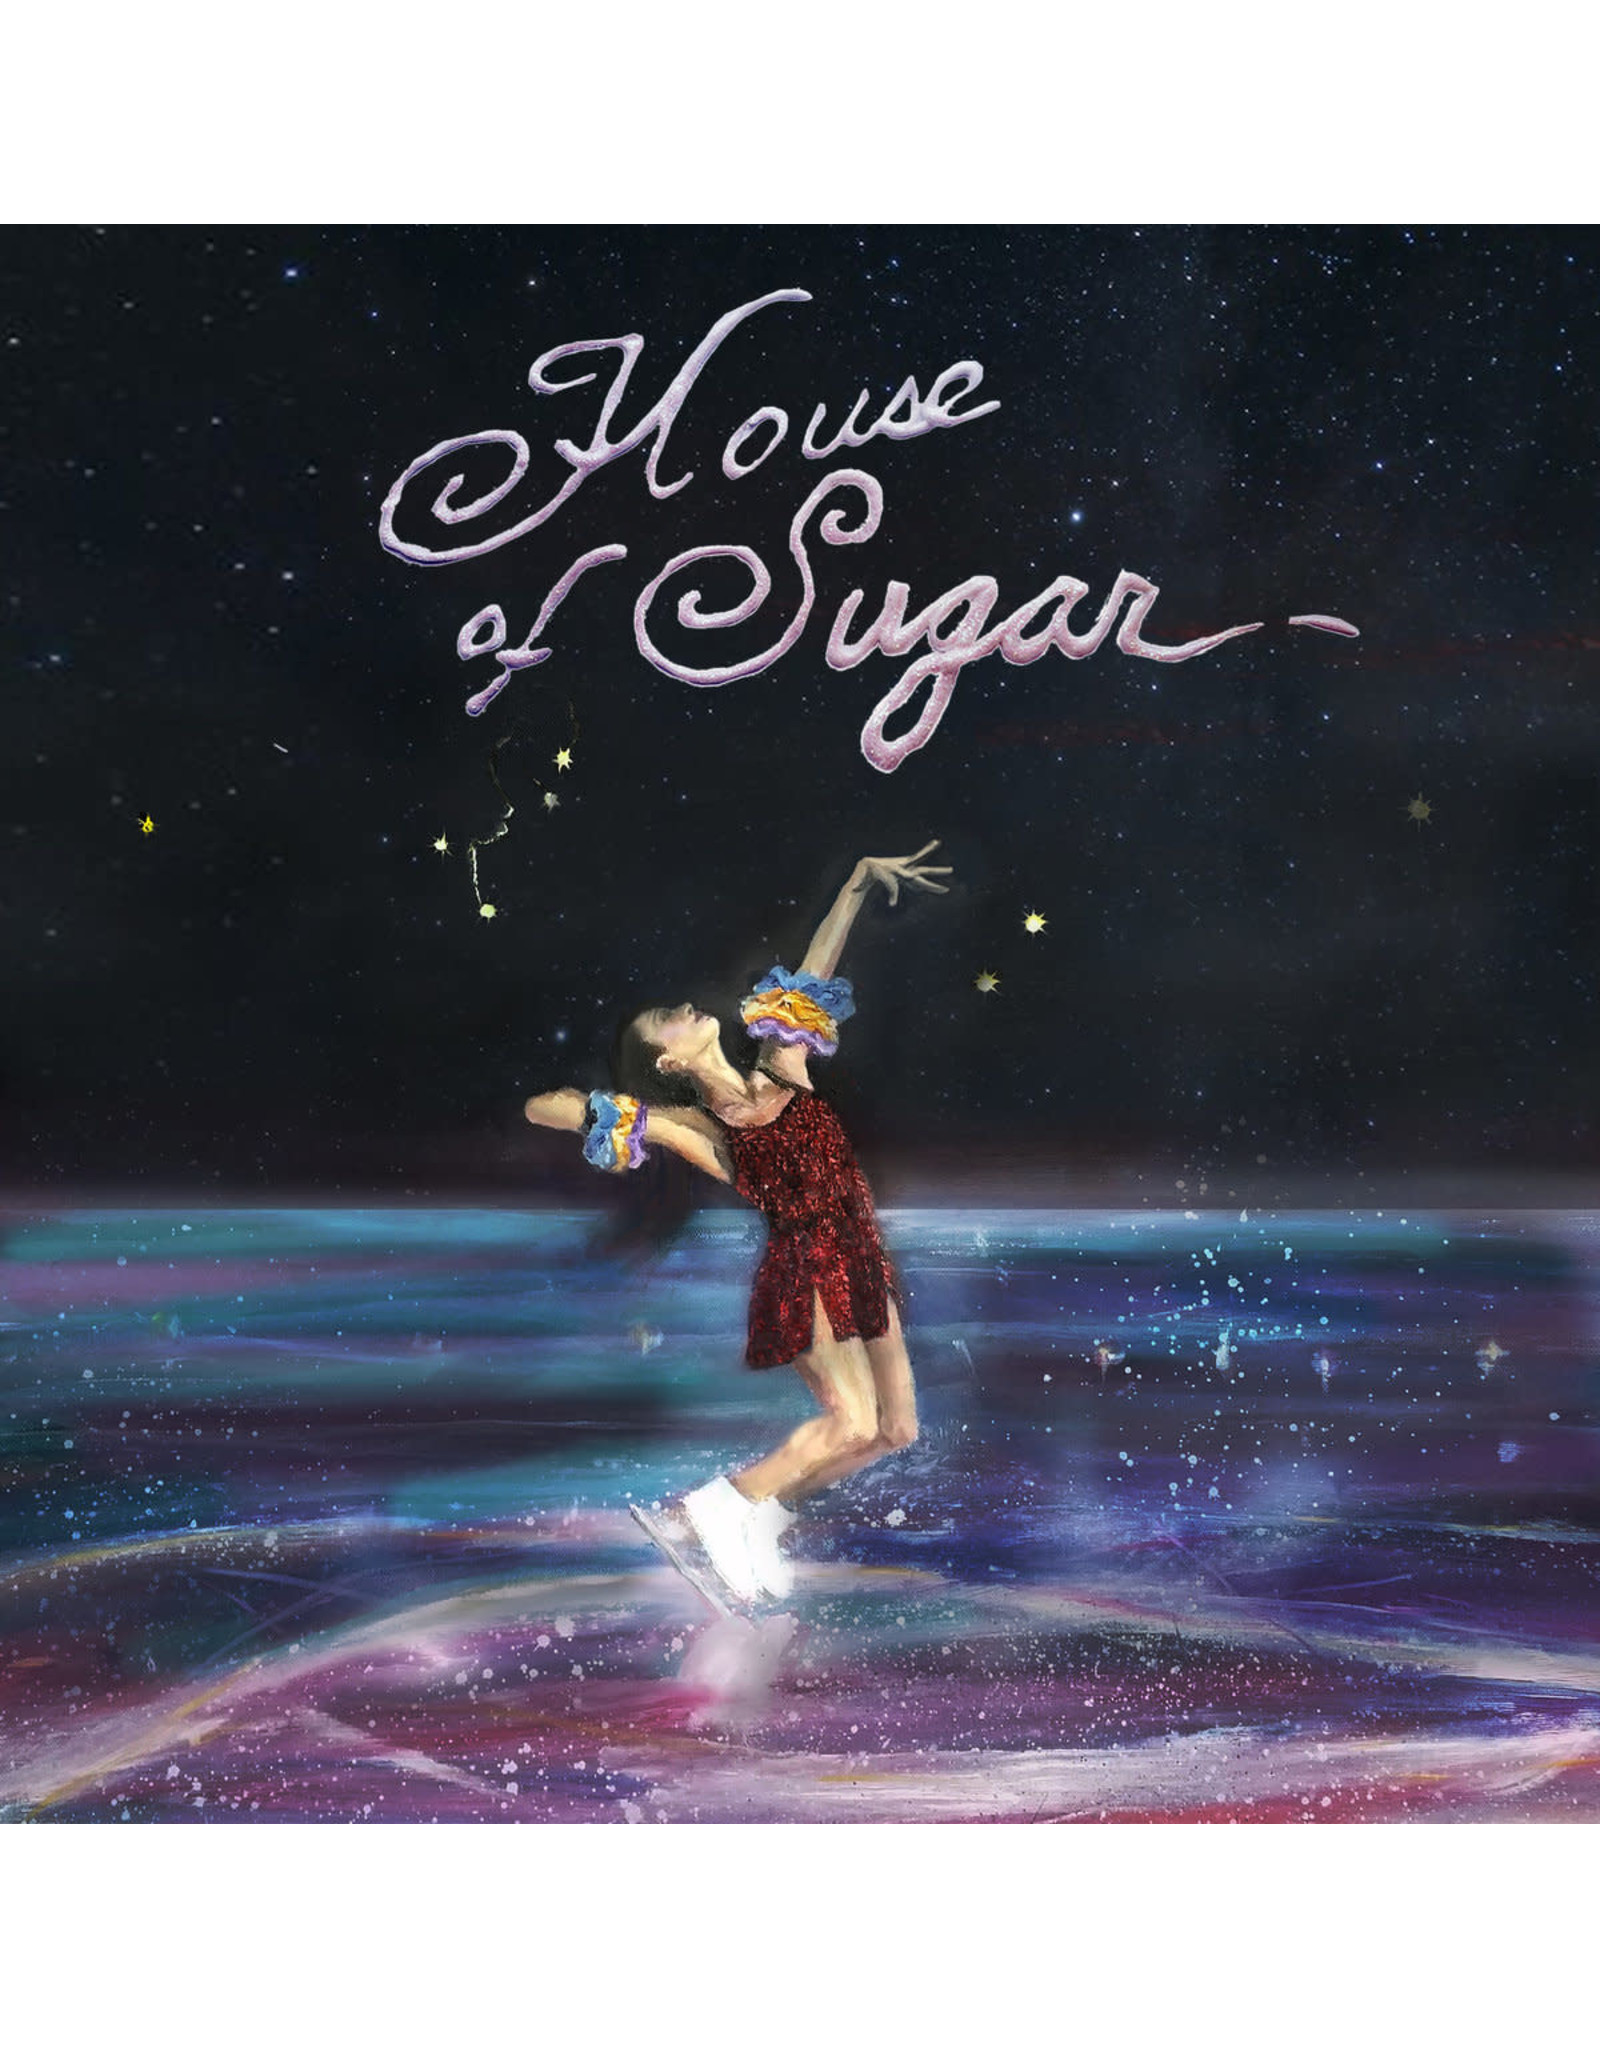 Alex G - House Of Sugar